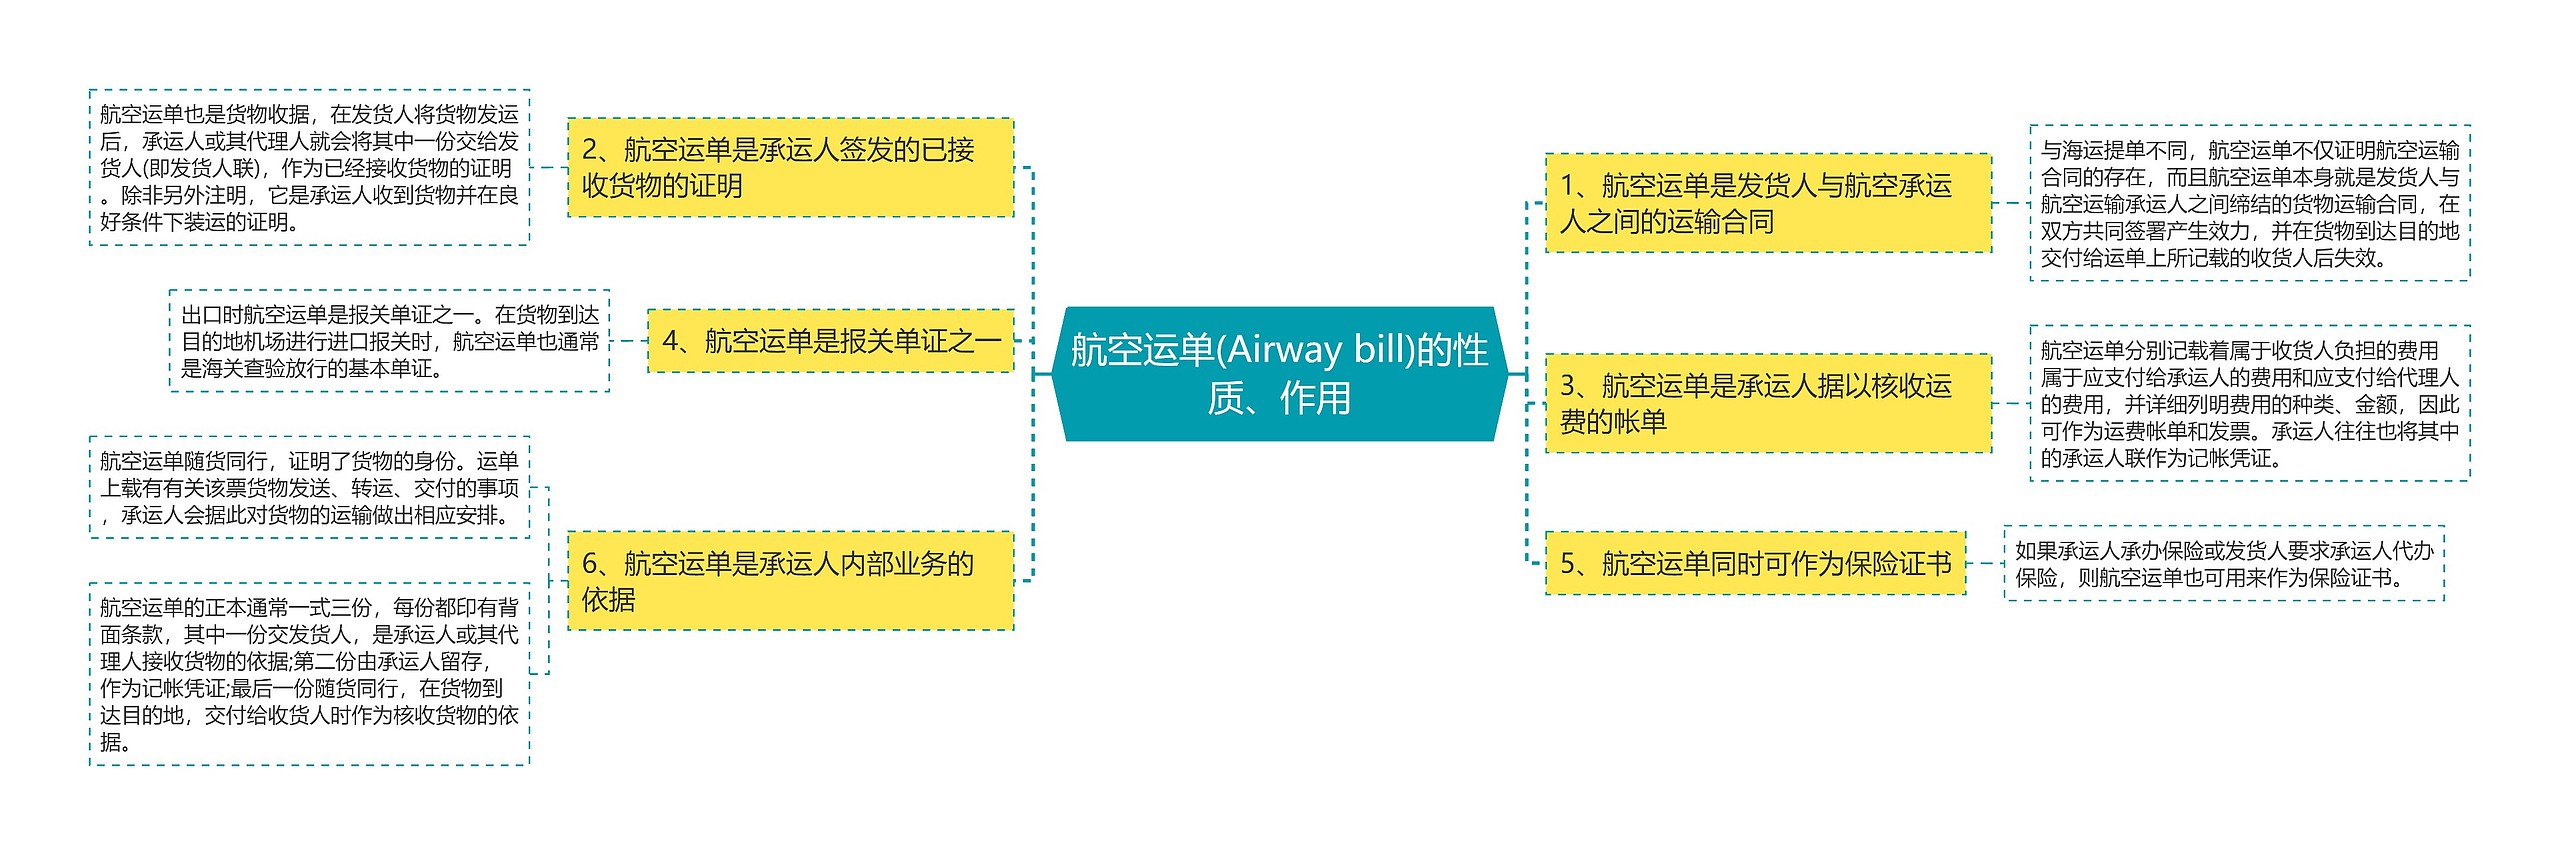 航空运单(Airway bill)的性质、作用思维导图